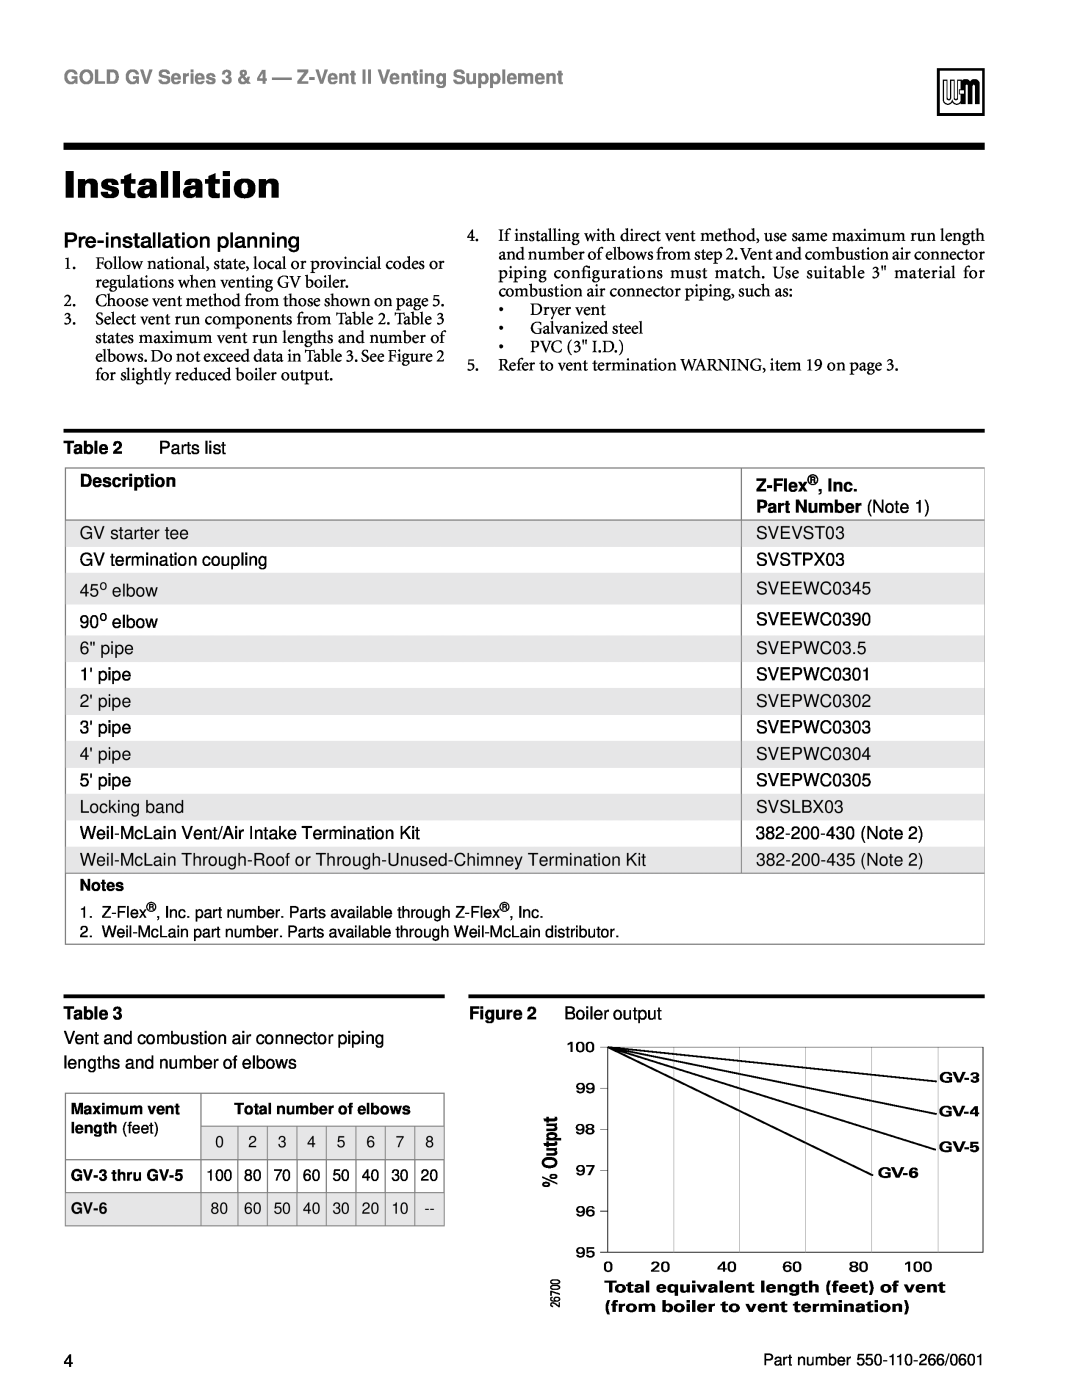 Weil-McLain GV Series 3, GV Series 4 Installation, Pre-installationplanning, Description, Z-Flex ,Inc, Part Number Note 